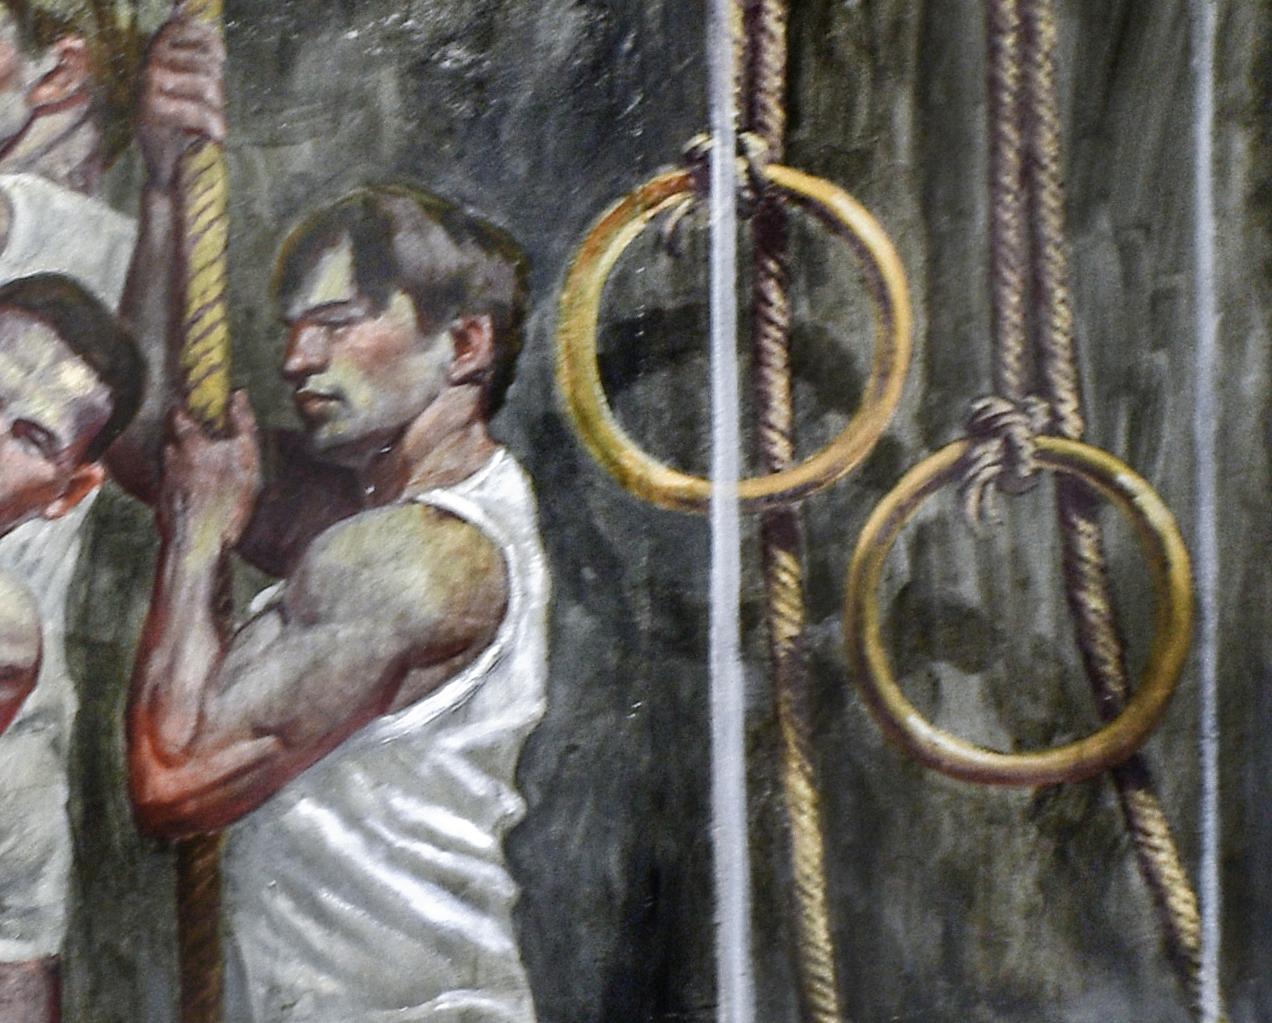 Grande peinture figurative de style académique représentant cinq athlètes masculins 
Peint par Mark Beard, alias 